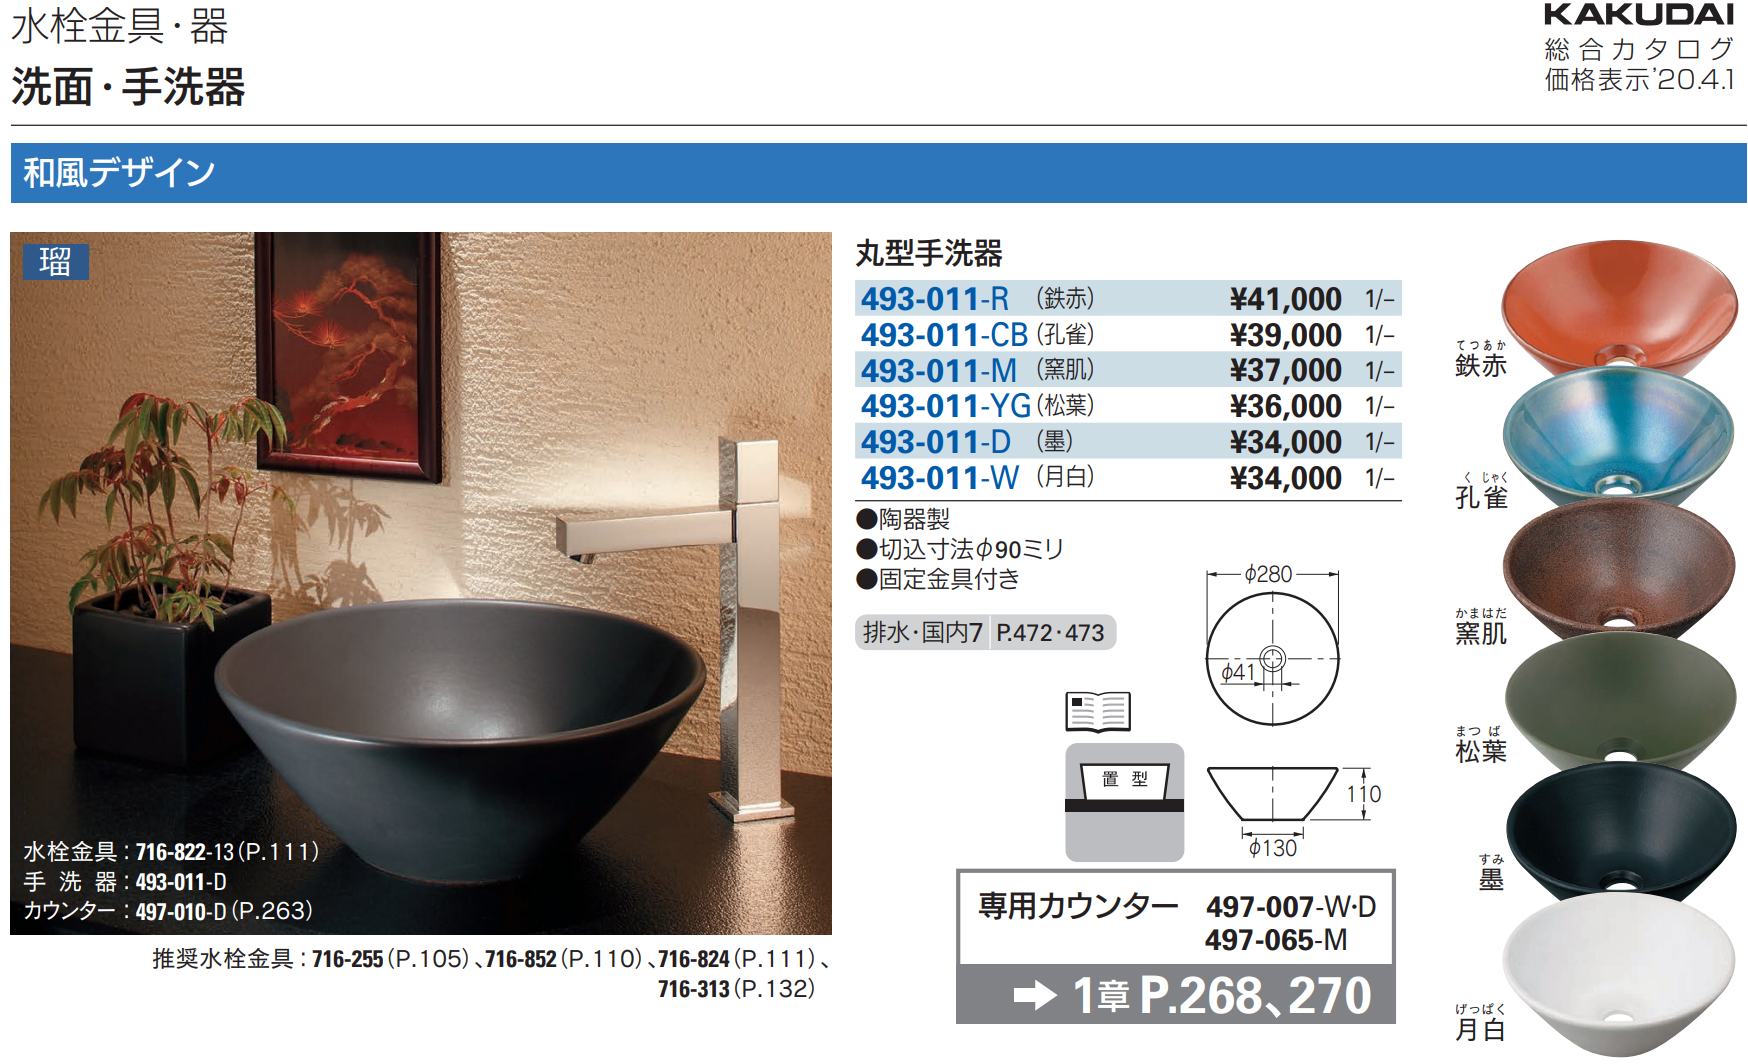 カクダイ 493-027-DG 瑠珠 舟型手洗器 古窯 通販